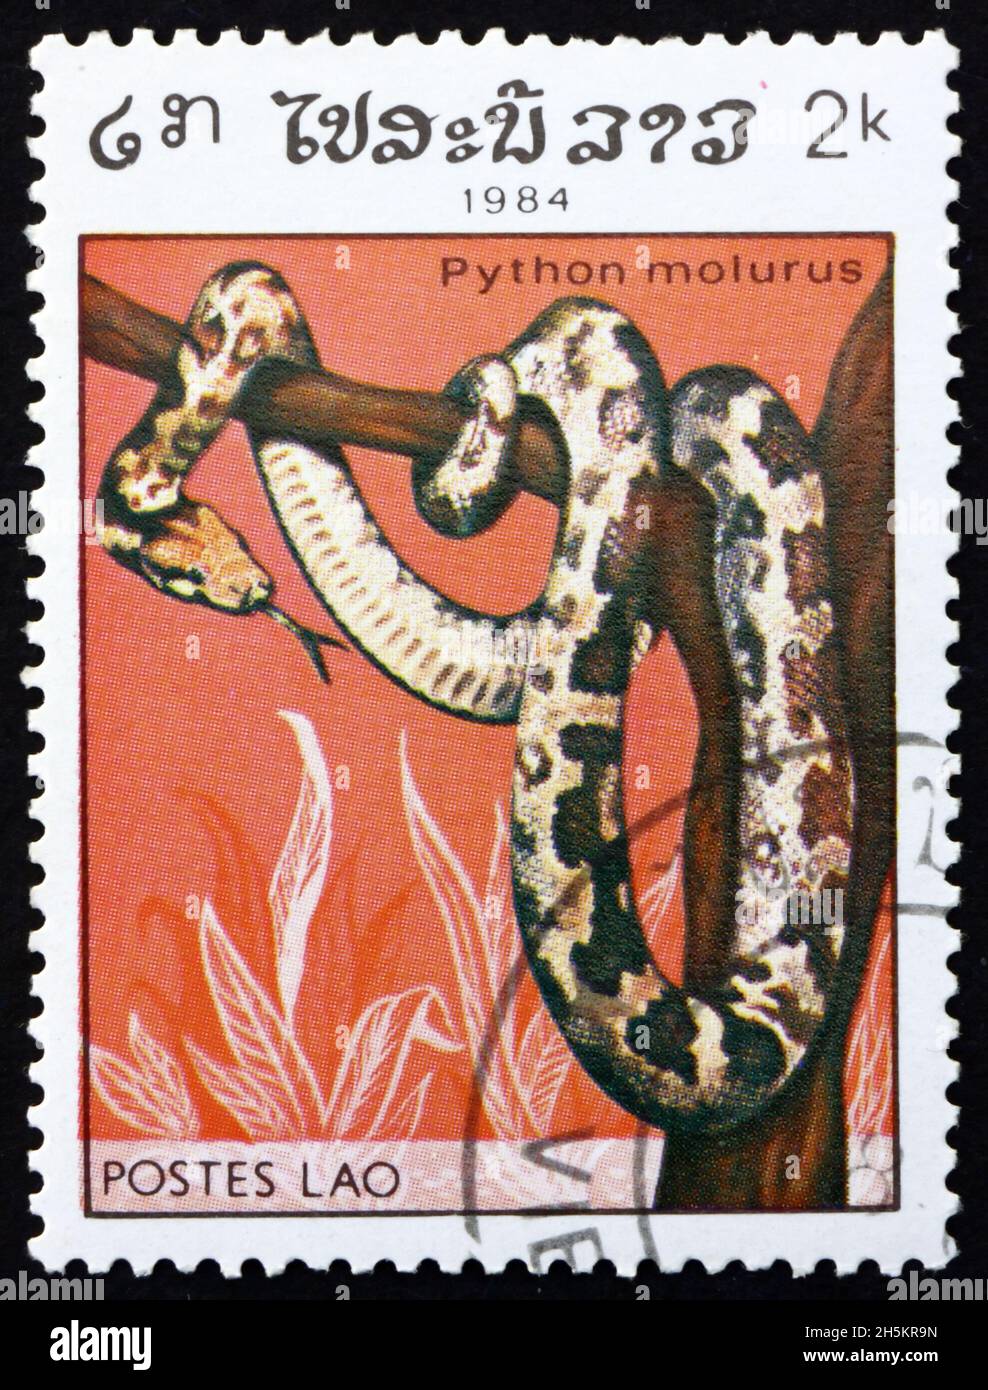 LAOS - CIRCA 1984: Un francobollo stampato in Laos mostra pitone indiano, python molurus, è un grande serpente nonvenomous nativo di regio tropicale e subtropicale Foto Stock